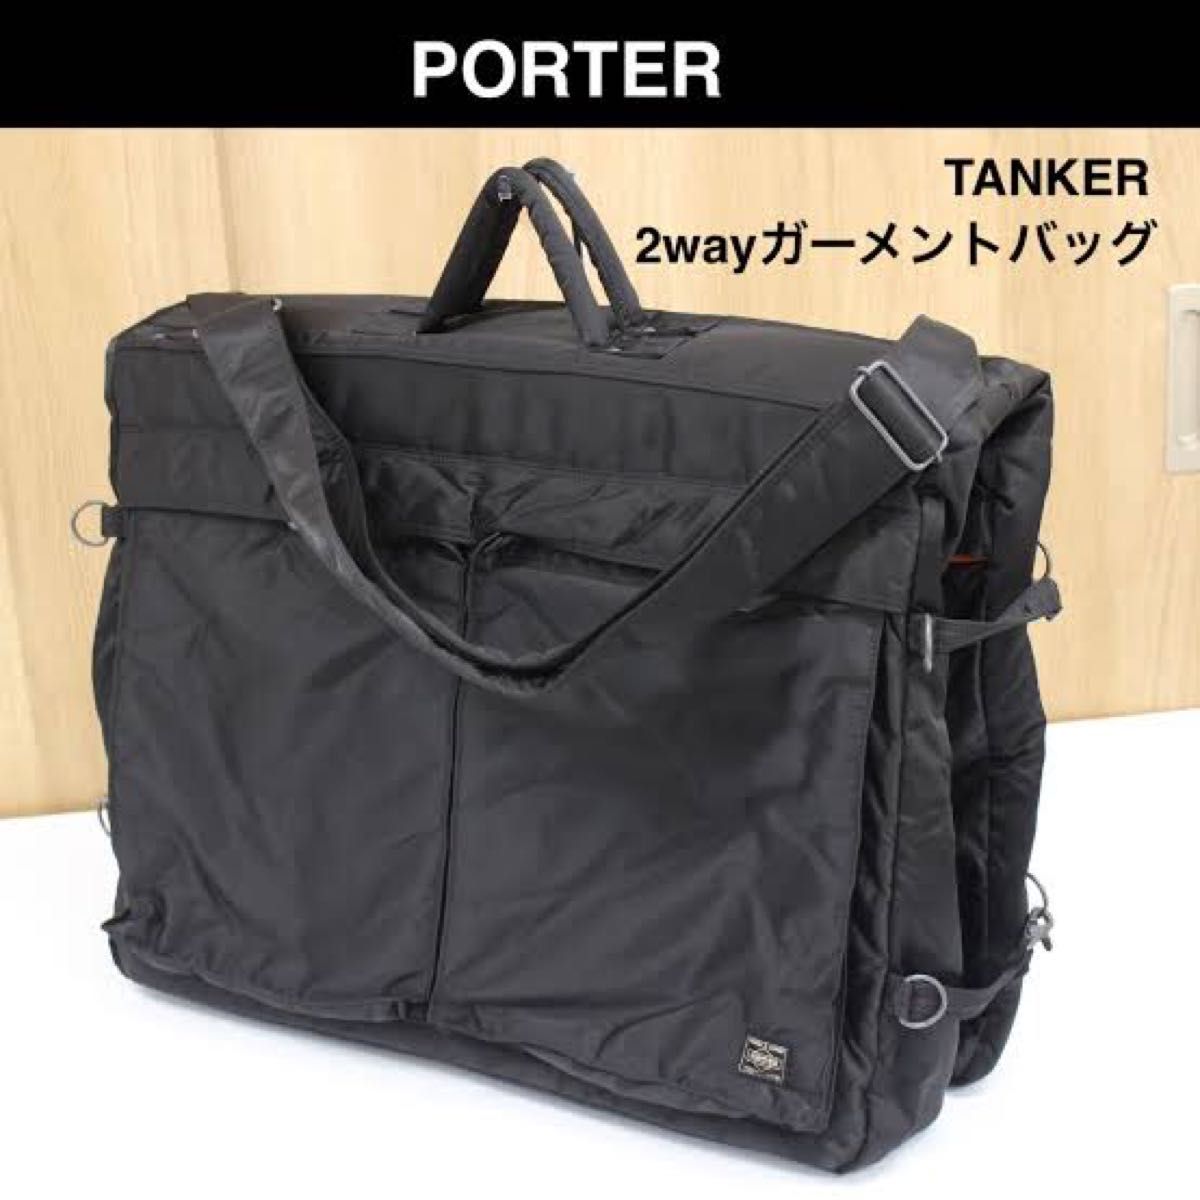 PORTER ポーター/生産完了 吉田カバン タンカー スーツケース ガーメントバッグ ブラック